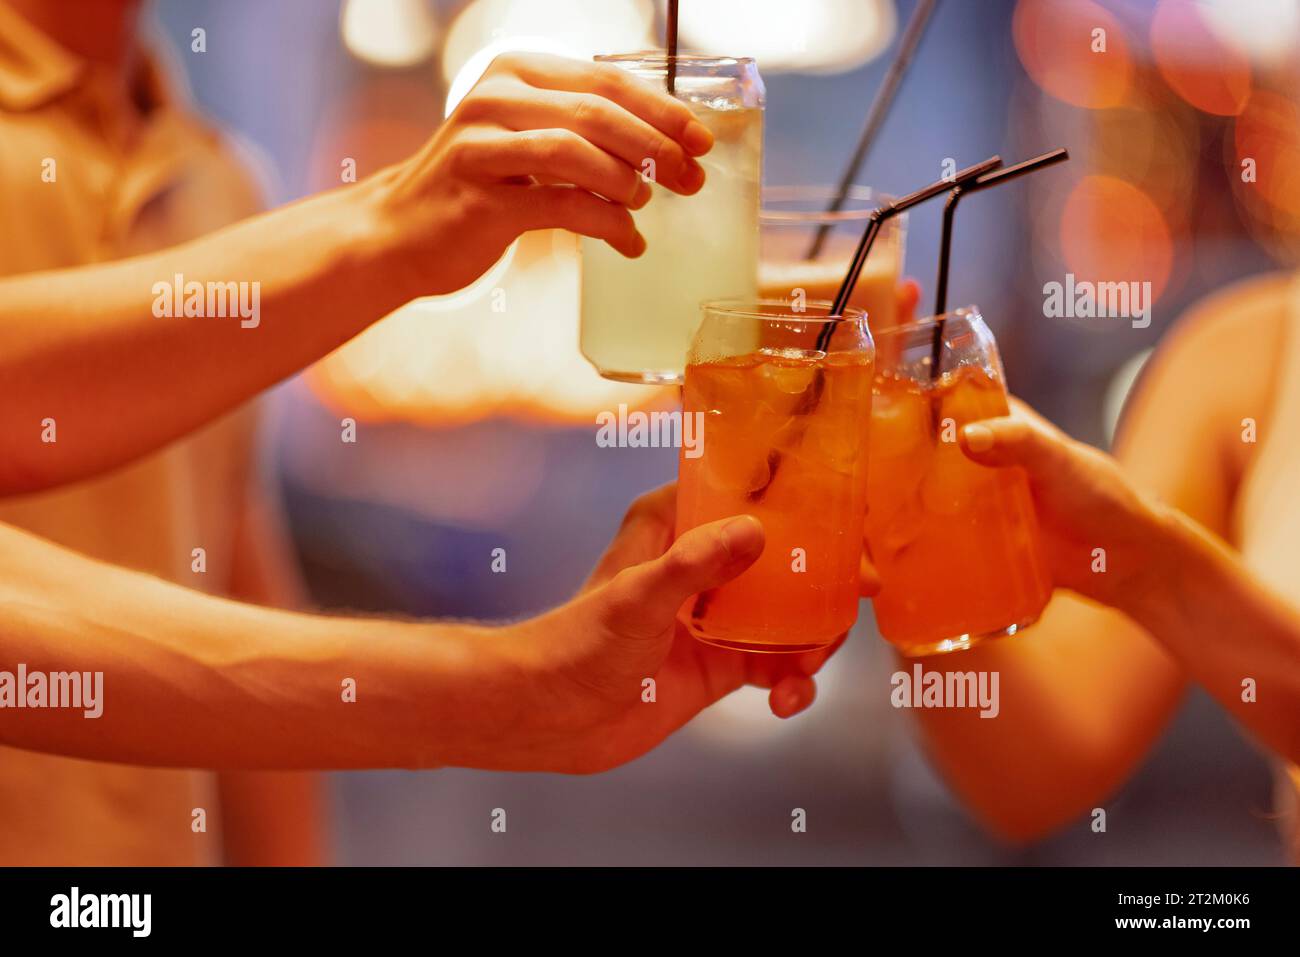 Gros plan des mains féminines et masculines tenant des verres avec des cocktails avec de la glace et en les cliquant. Les amis font un toast festif avec de délicieuses boissons aux agrumes Banque D'Images